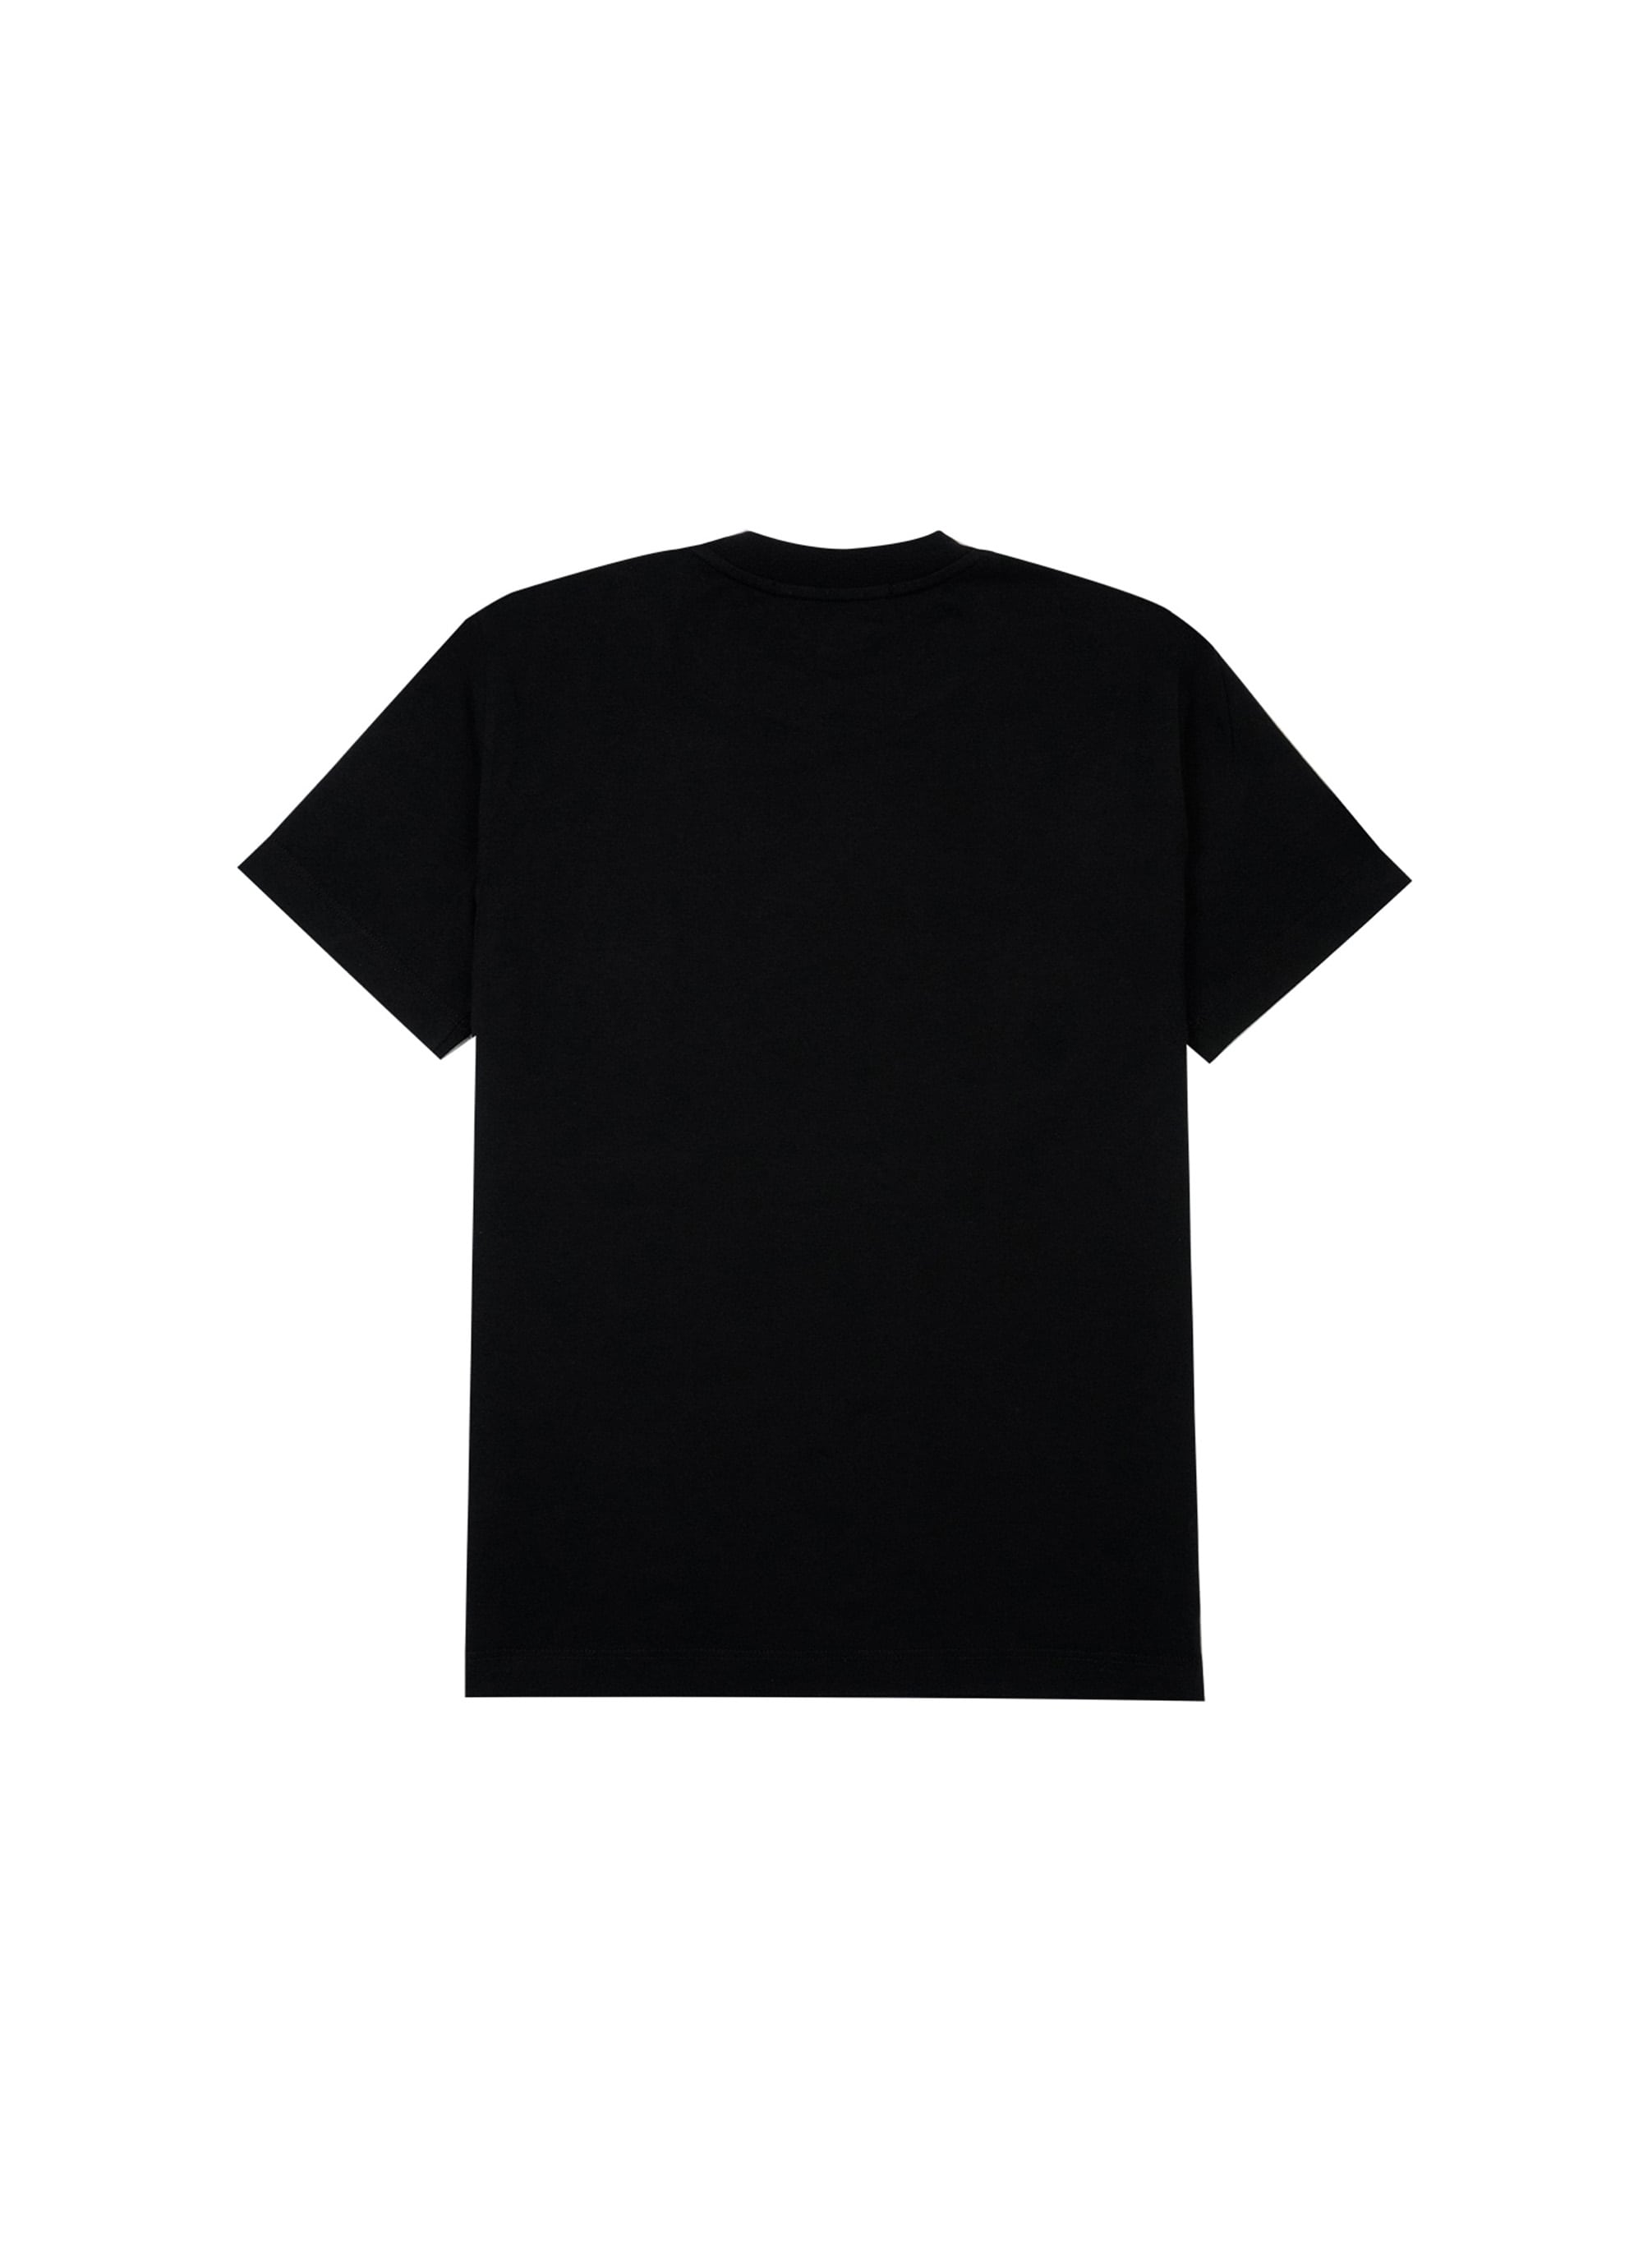 【NEW】MSGM ブラッシュロゴTシャツ【Japan Exclusive/GLITTER PRINT】 詳細画像 ブラック×シルバーグリッター 2